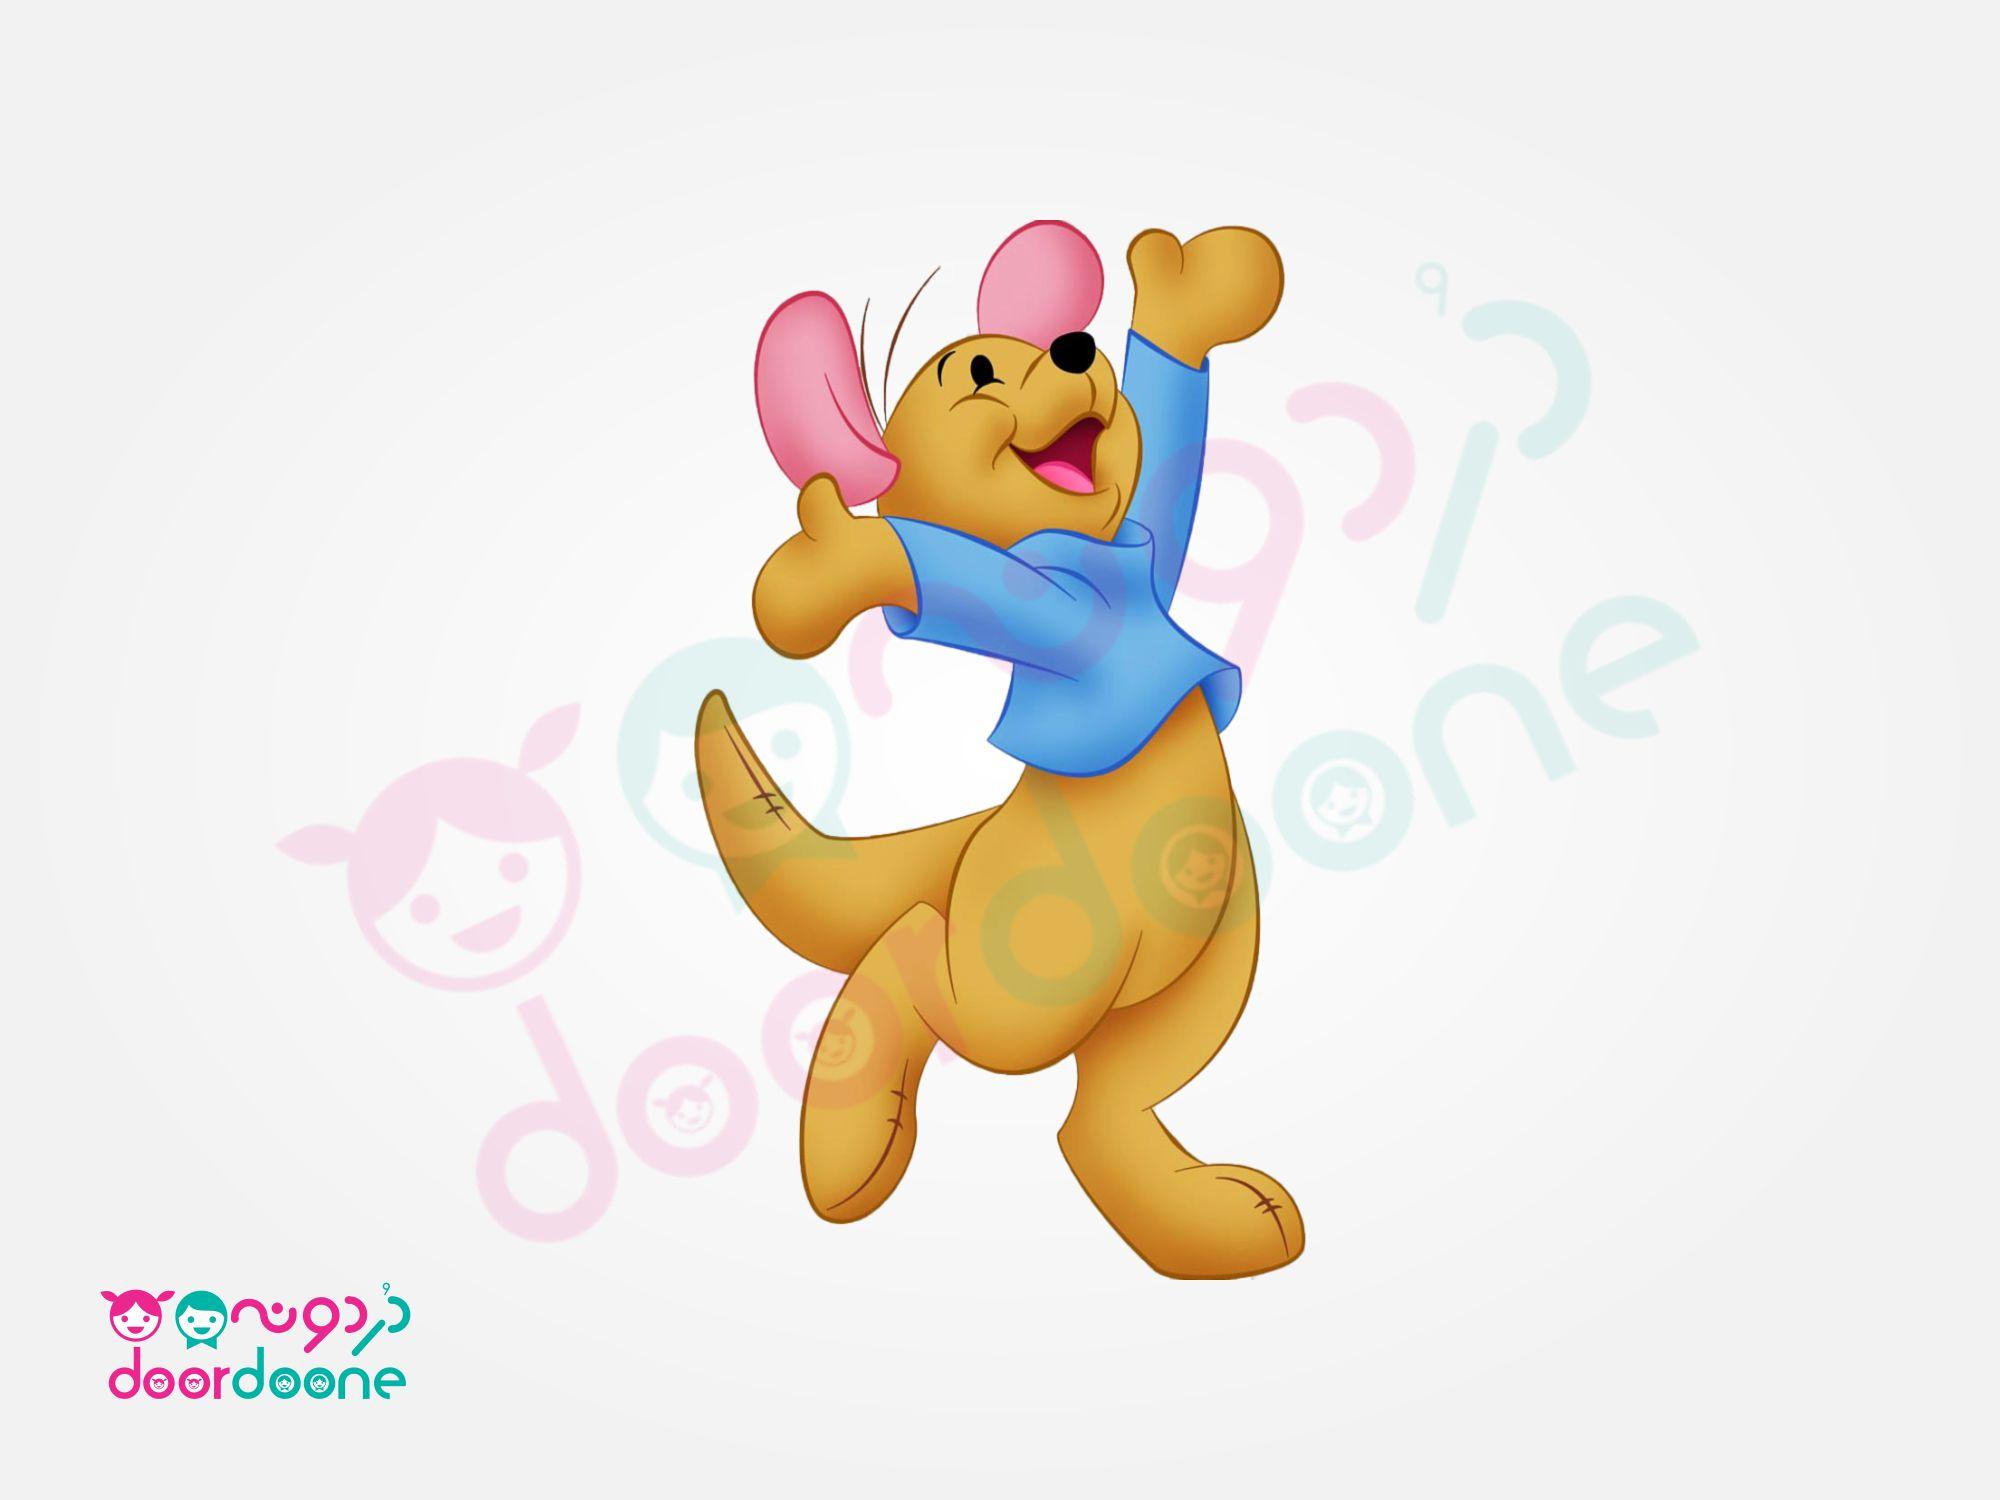 ویفر تم وينی پو (Winnie the Pooh)